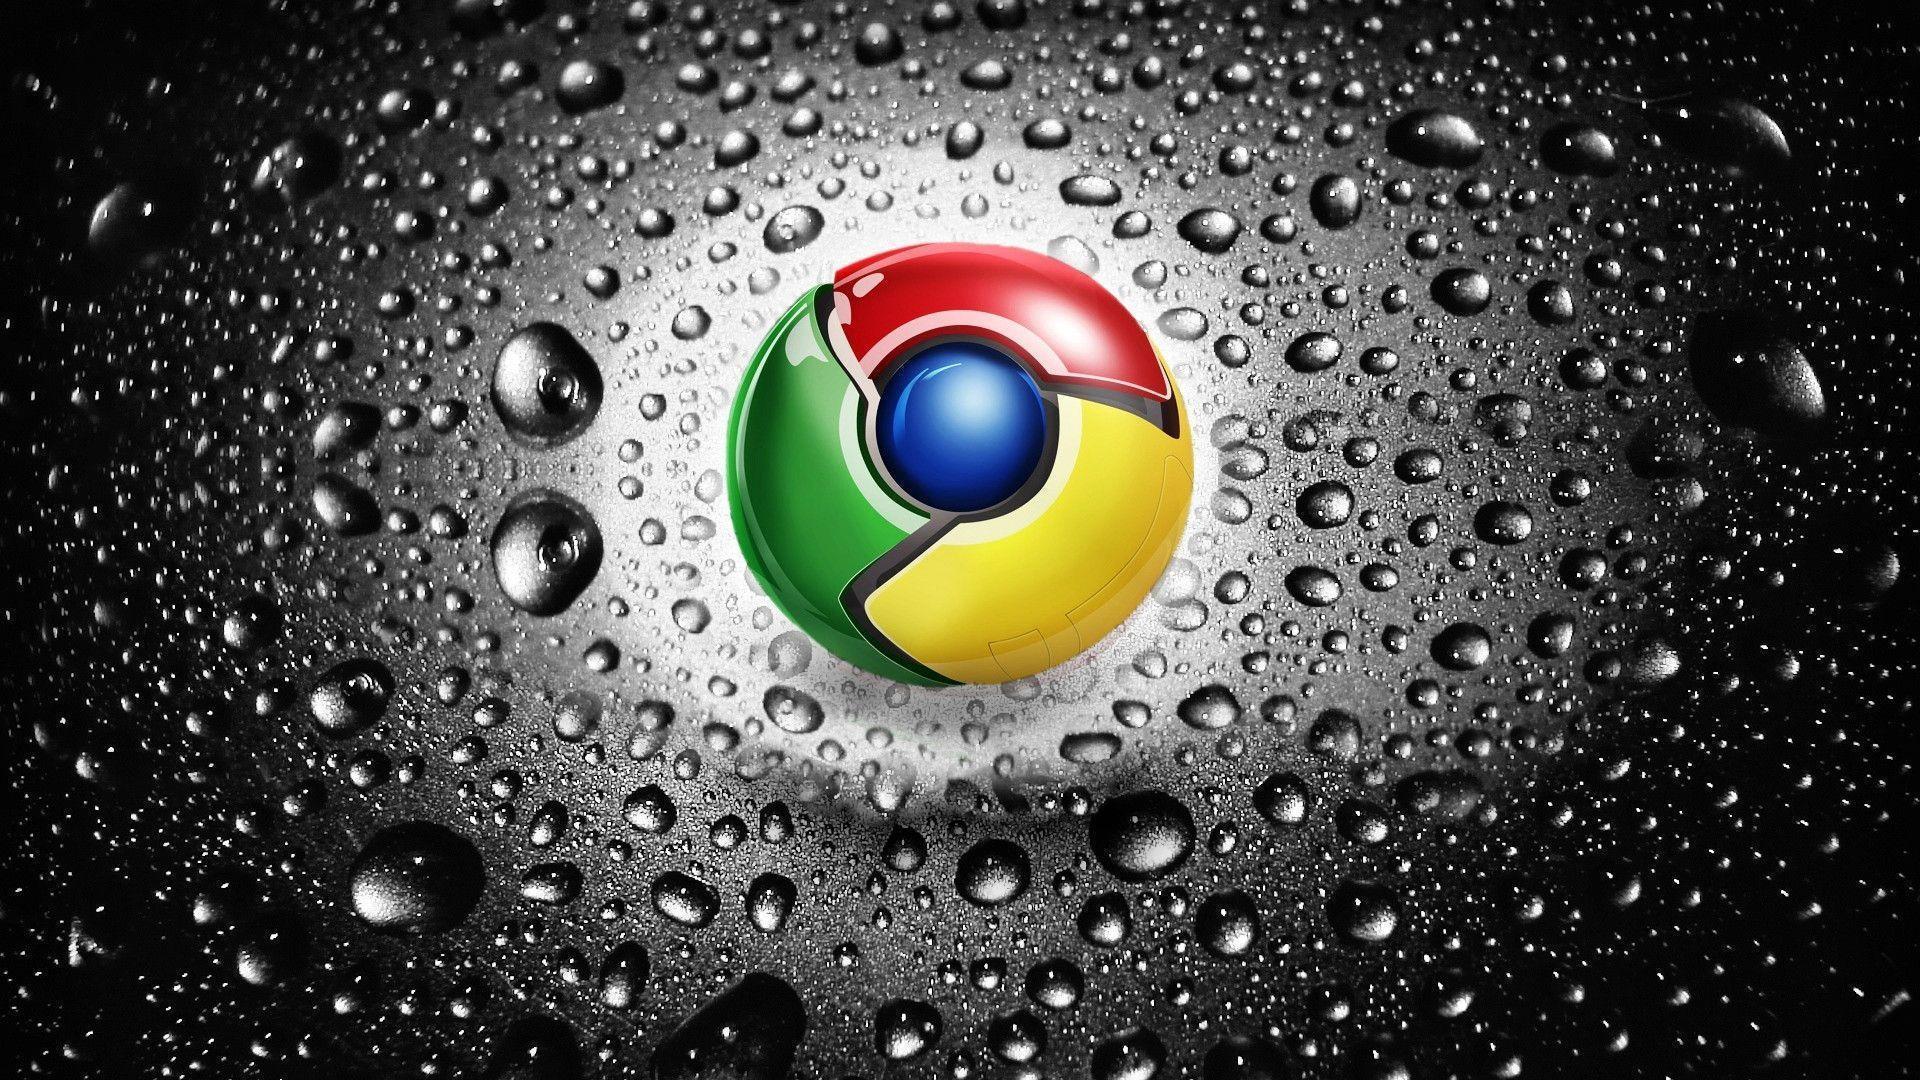 Fonds d&;écran Google Chrome, tous les wallpaper Google Chrome